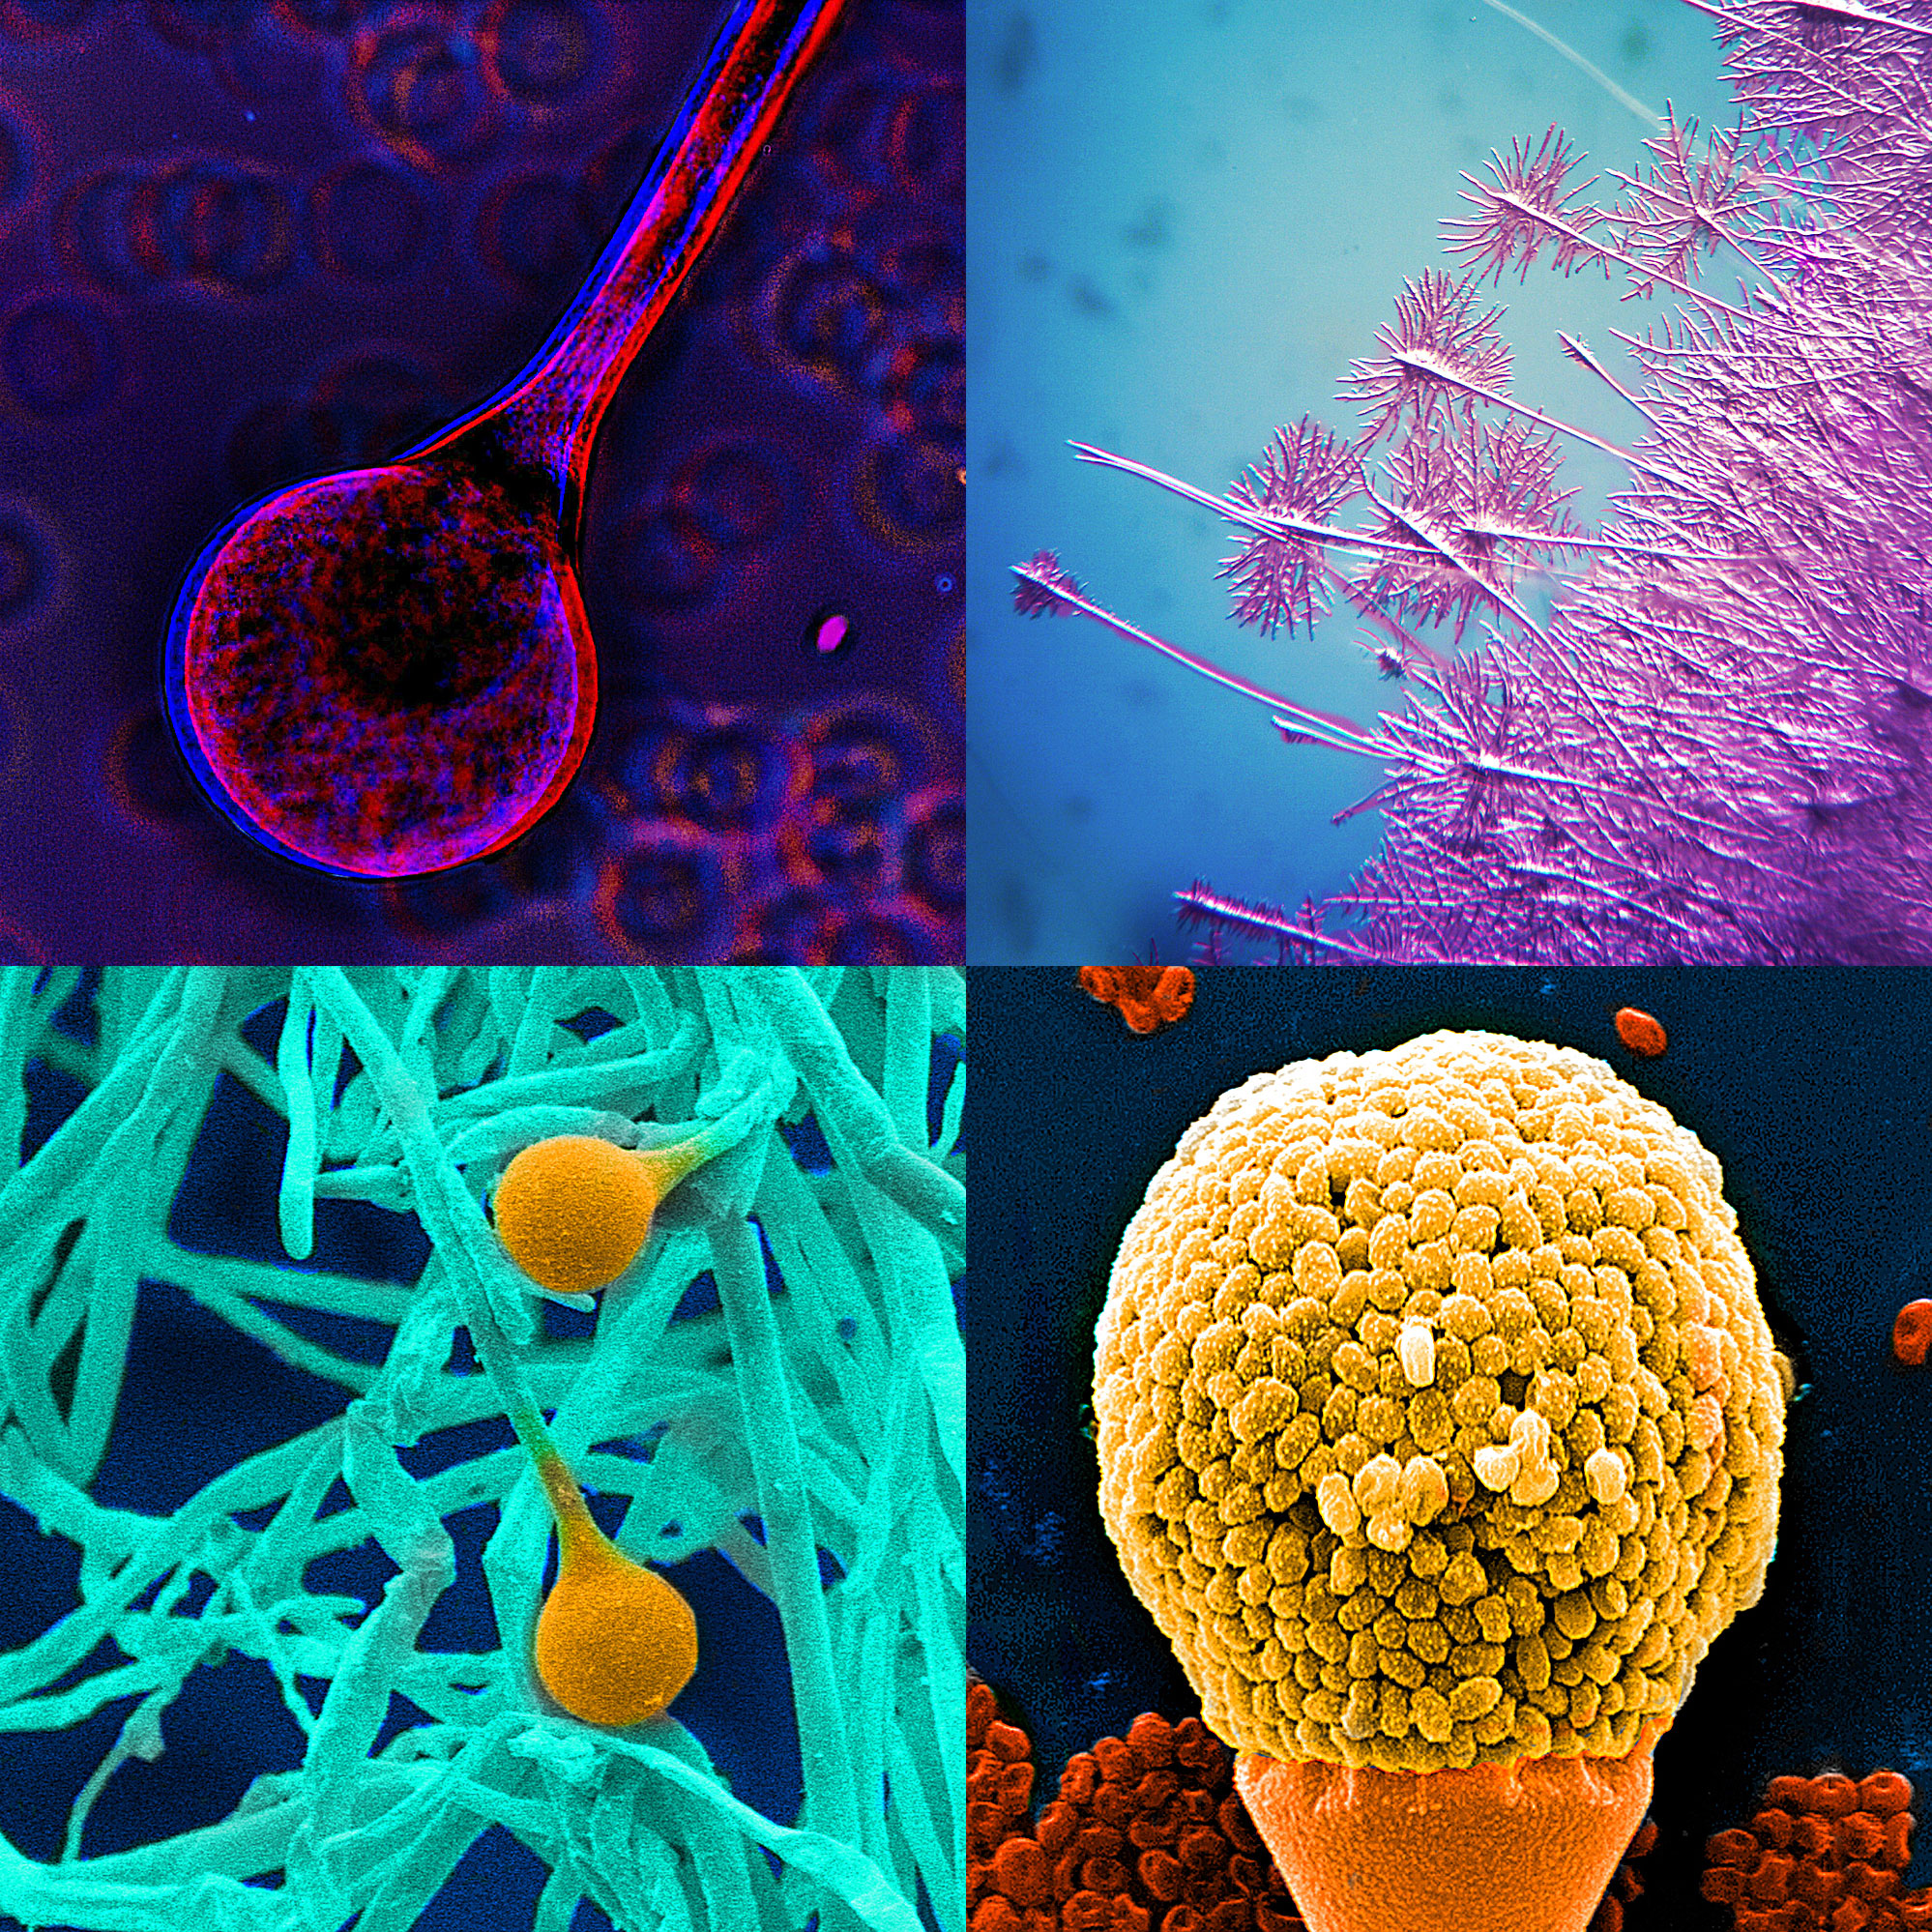 Микроорганизмы способные вызывать заболевания. Микробы и вирусы под микроскопом. Бактерии вирусы грибки. Грибы микроорганизмы. Микроорганизмы грибы бактерии.